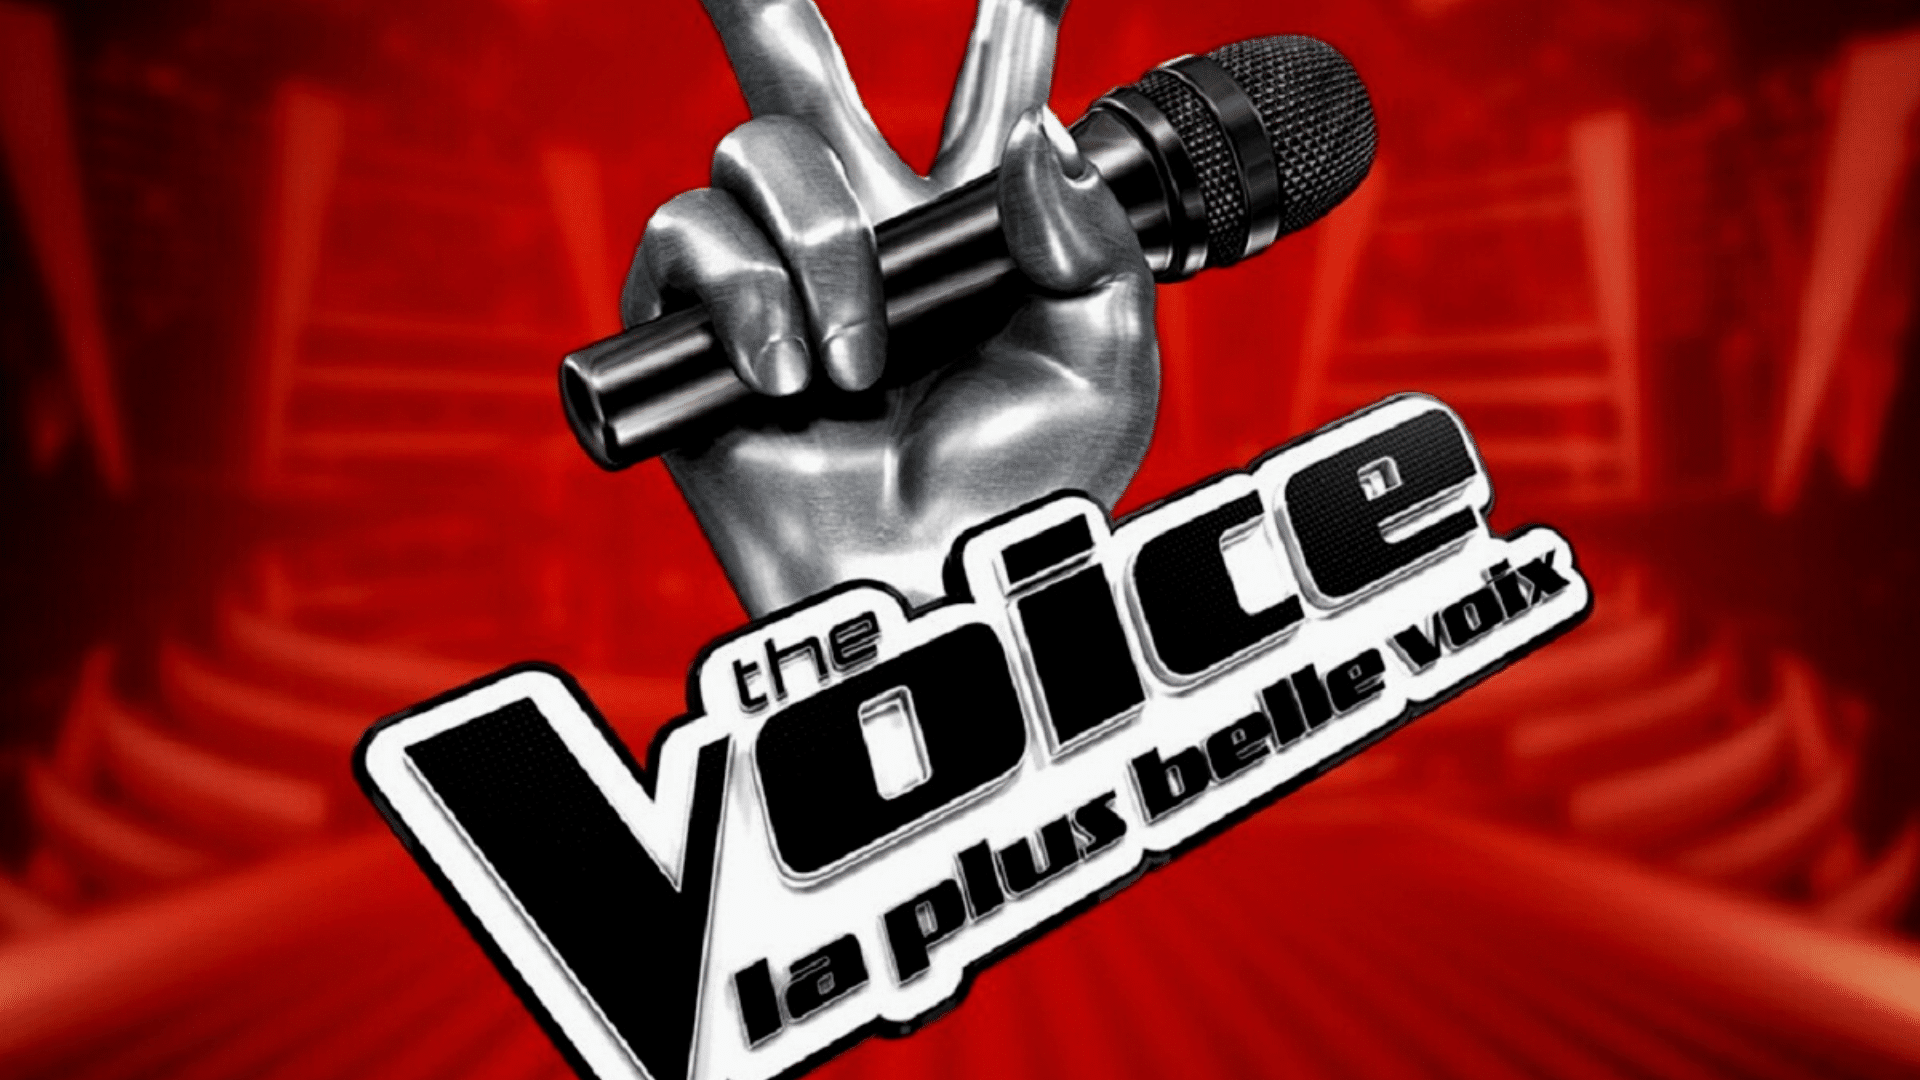 The Voice : un candidat pour VIanney